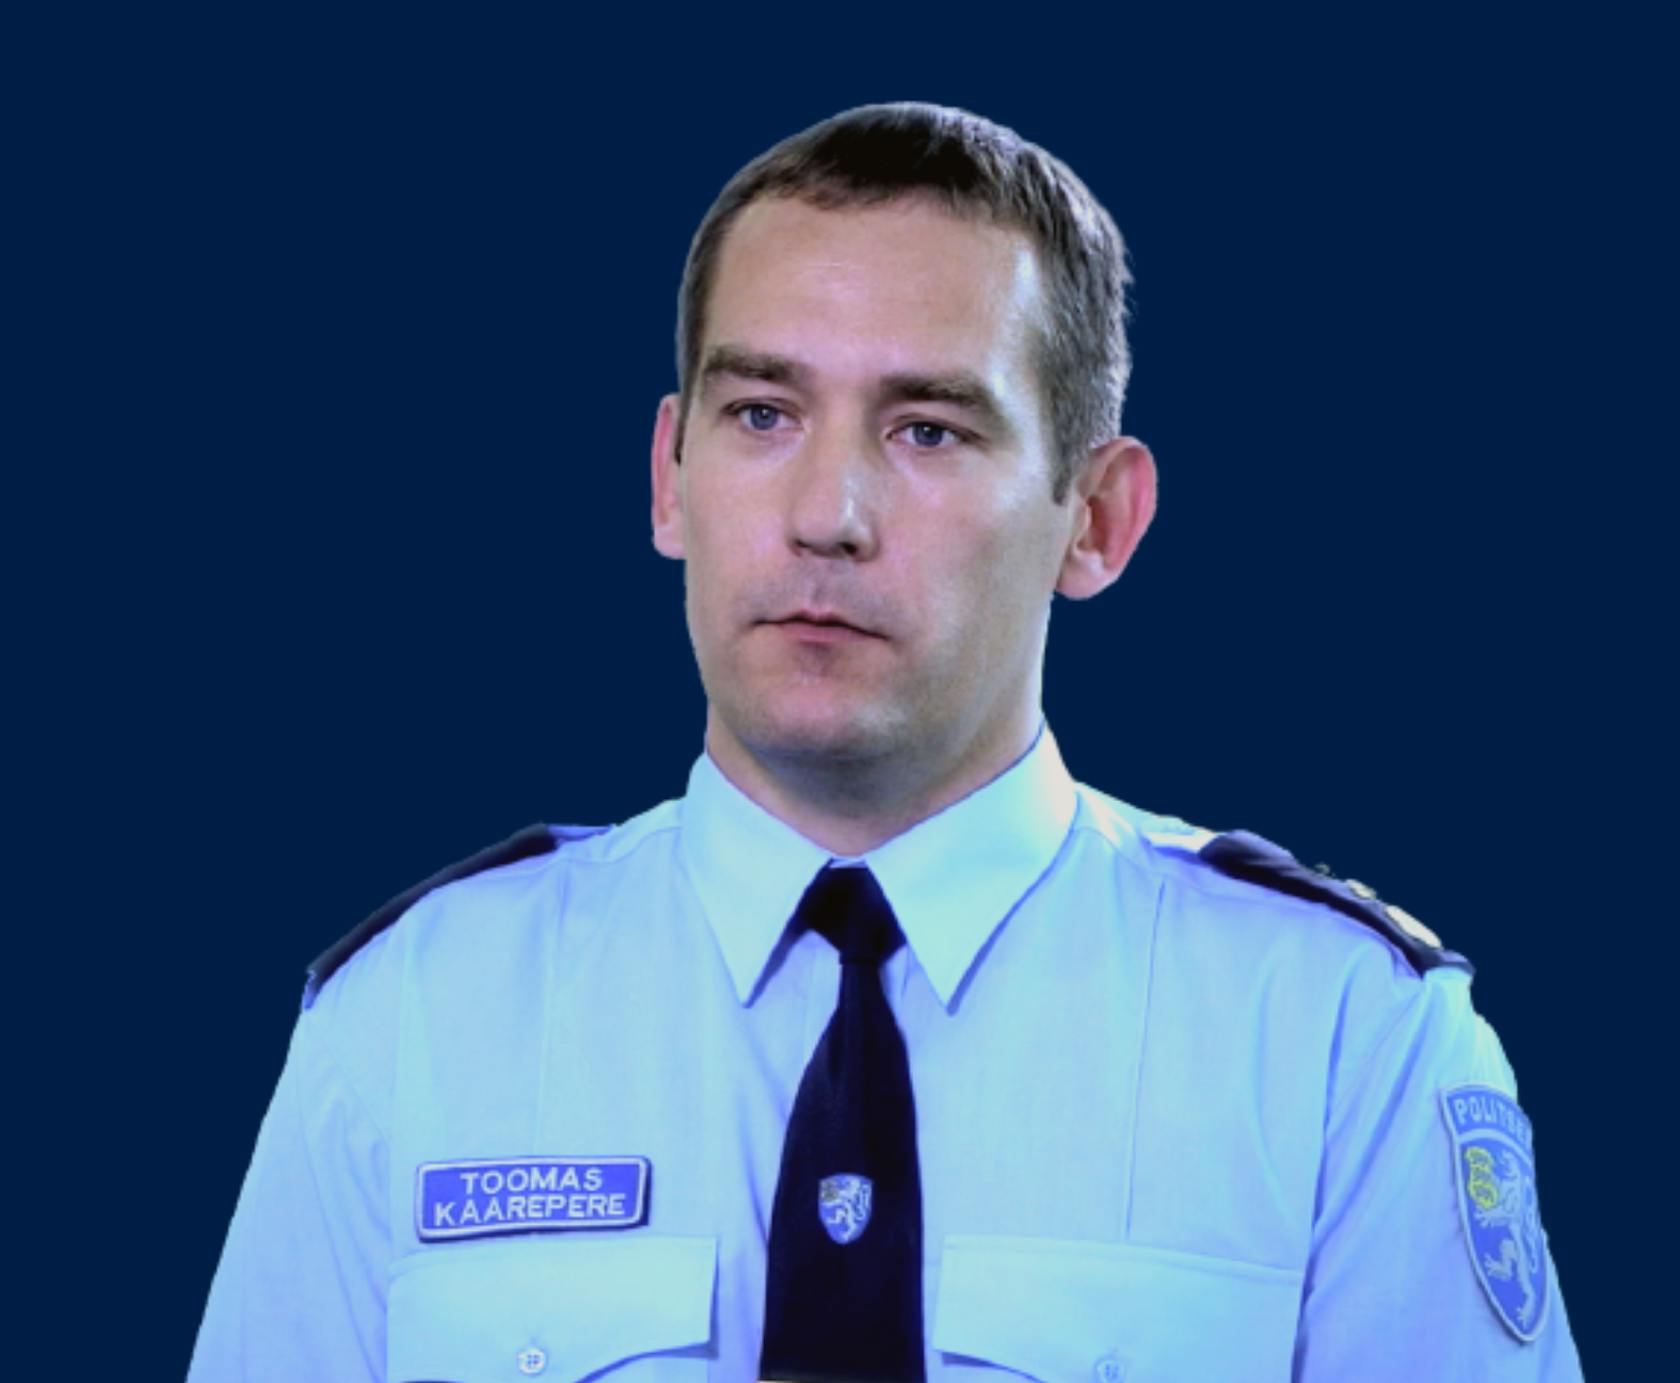 Toomas Kaarepere, Leiter für den Bereich Verkehr innerhalb des estnischen Polizei- und Grenzschutzamts